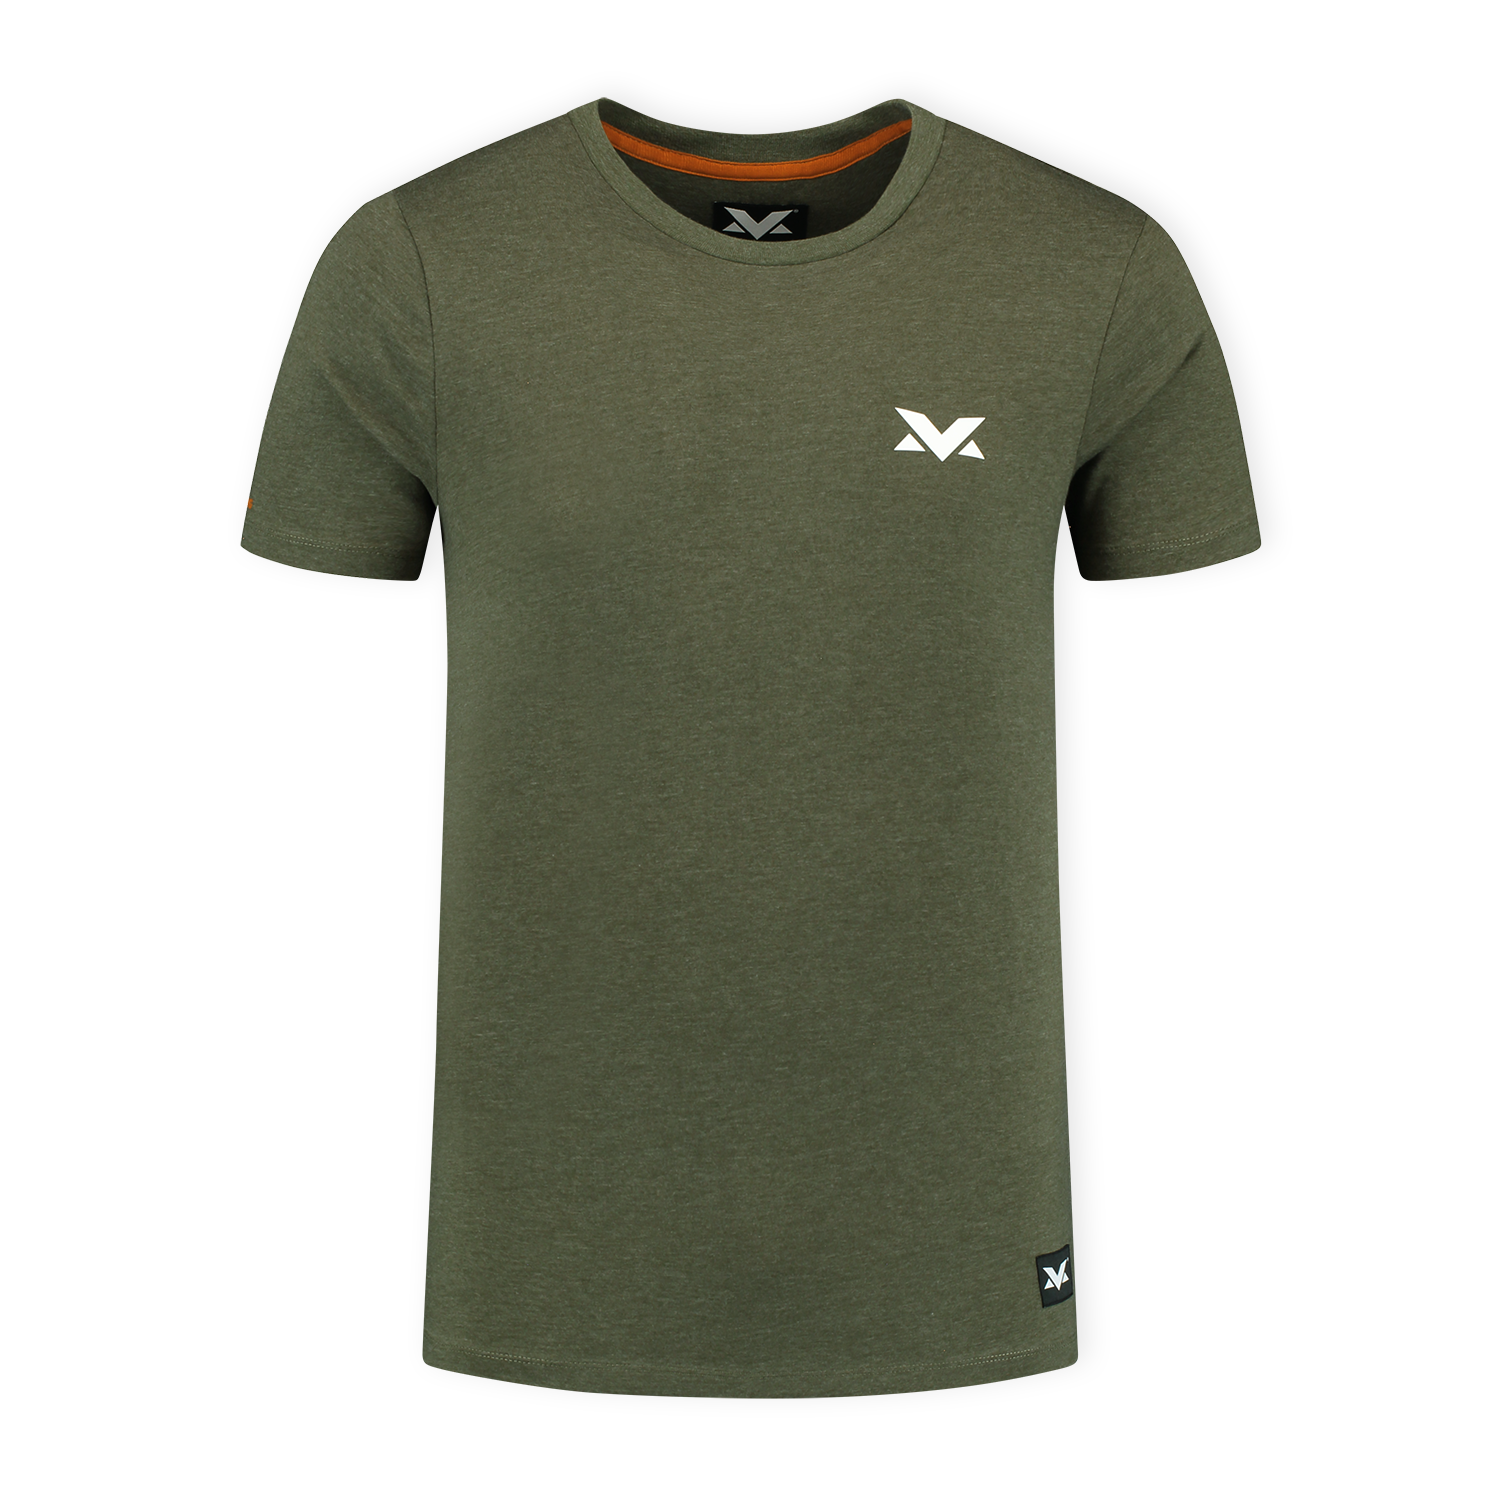 MV T-shirt The Limits - Groen - L - Max Verstappen